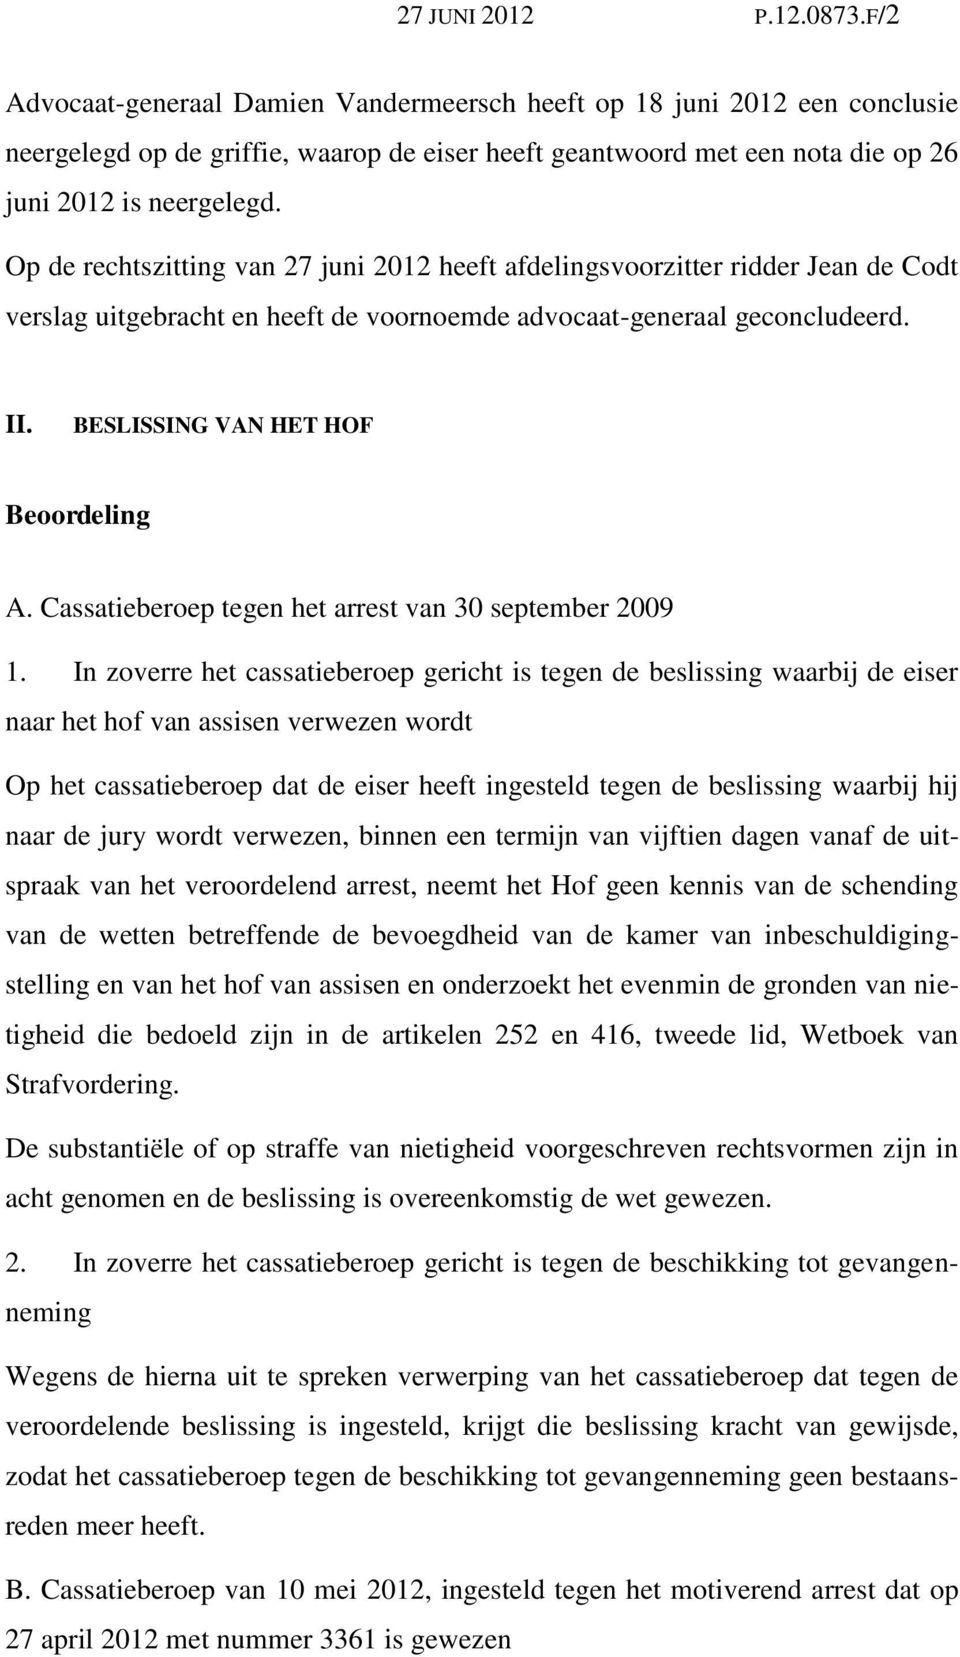 Op de rechtszitting van 27 juni 2012 heeft afdelingsvoorzitter ridder Jean de Codt verslag uitgebracht en heeft de voornoemde advocaat-generaal geconcludeerd. II. BESLISSING VAN HET HOF Beoordeling A.